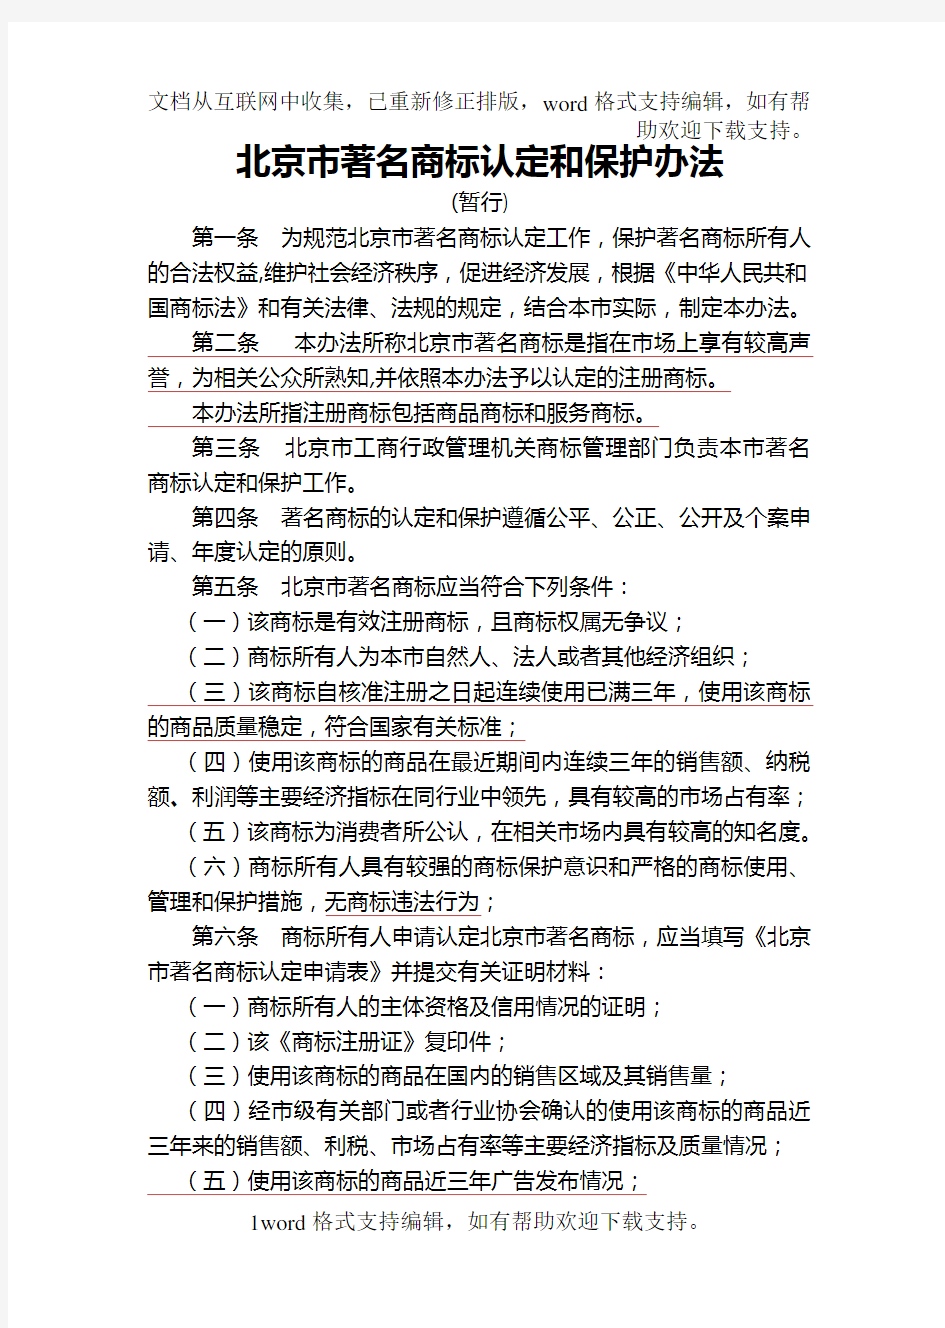 北京市著名商标认定和保护办法